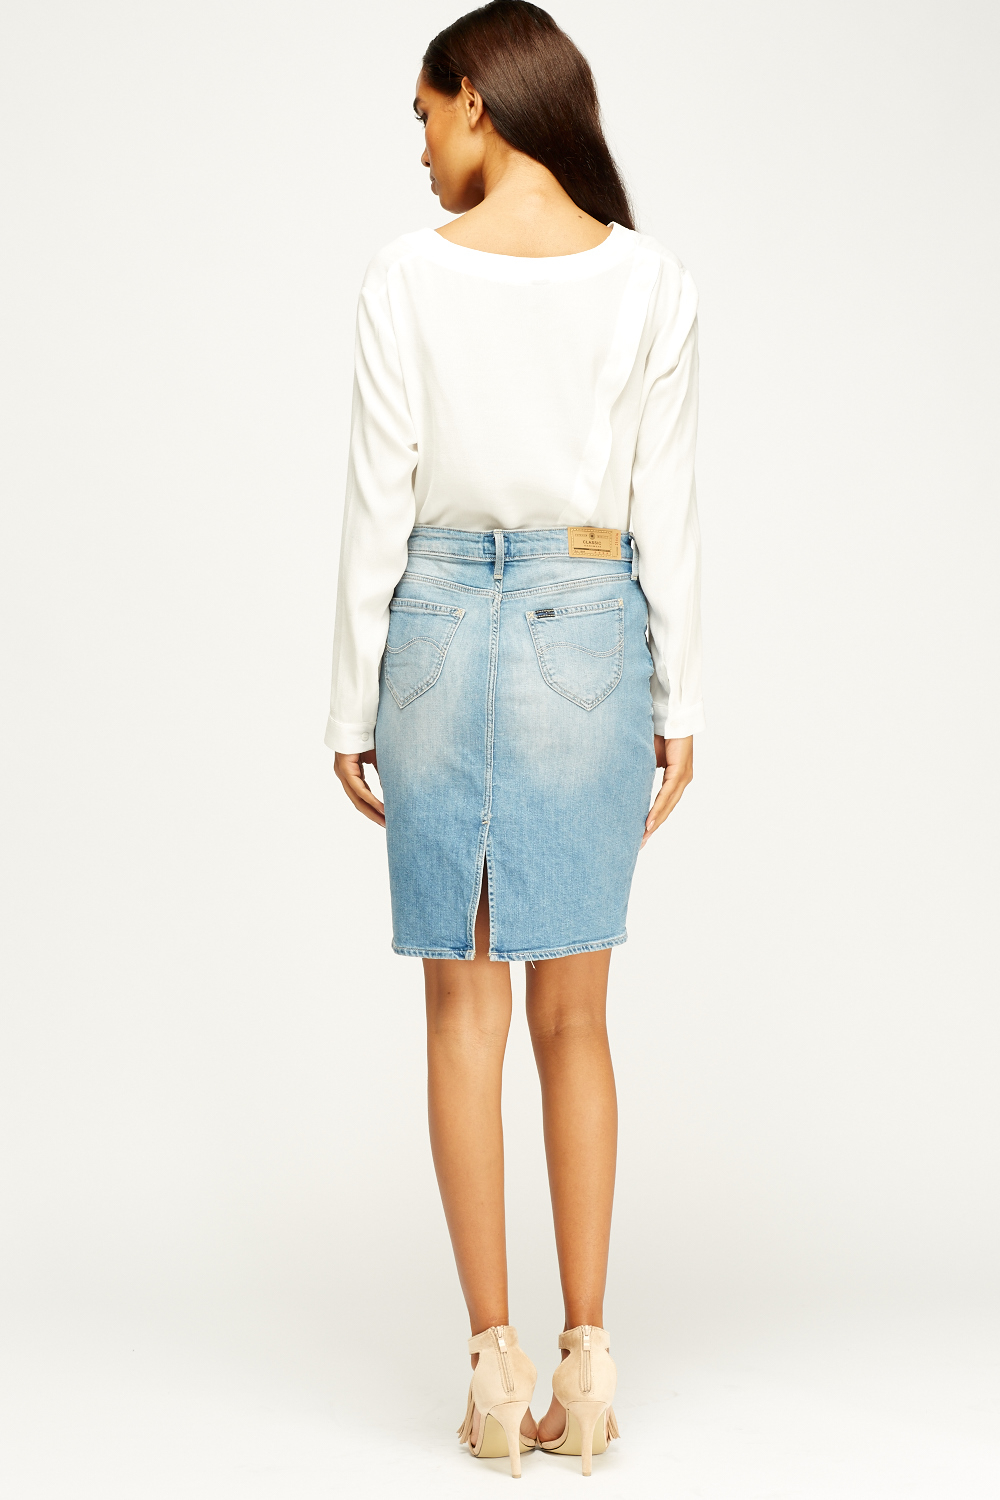 Light Blue Denim Skirt - Just $7